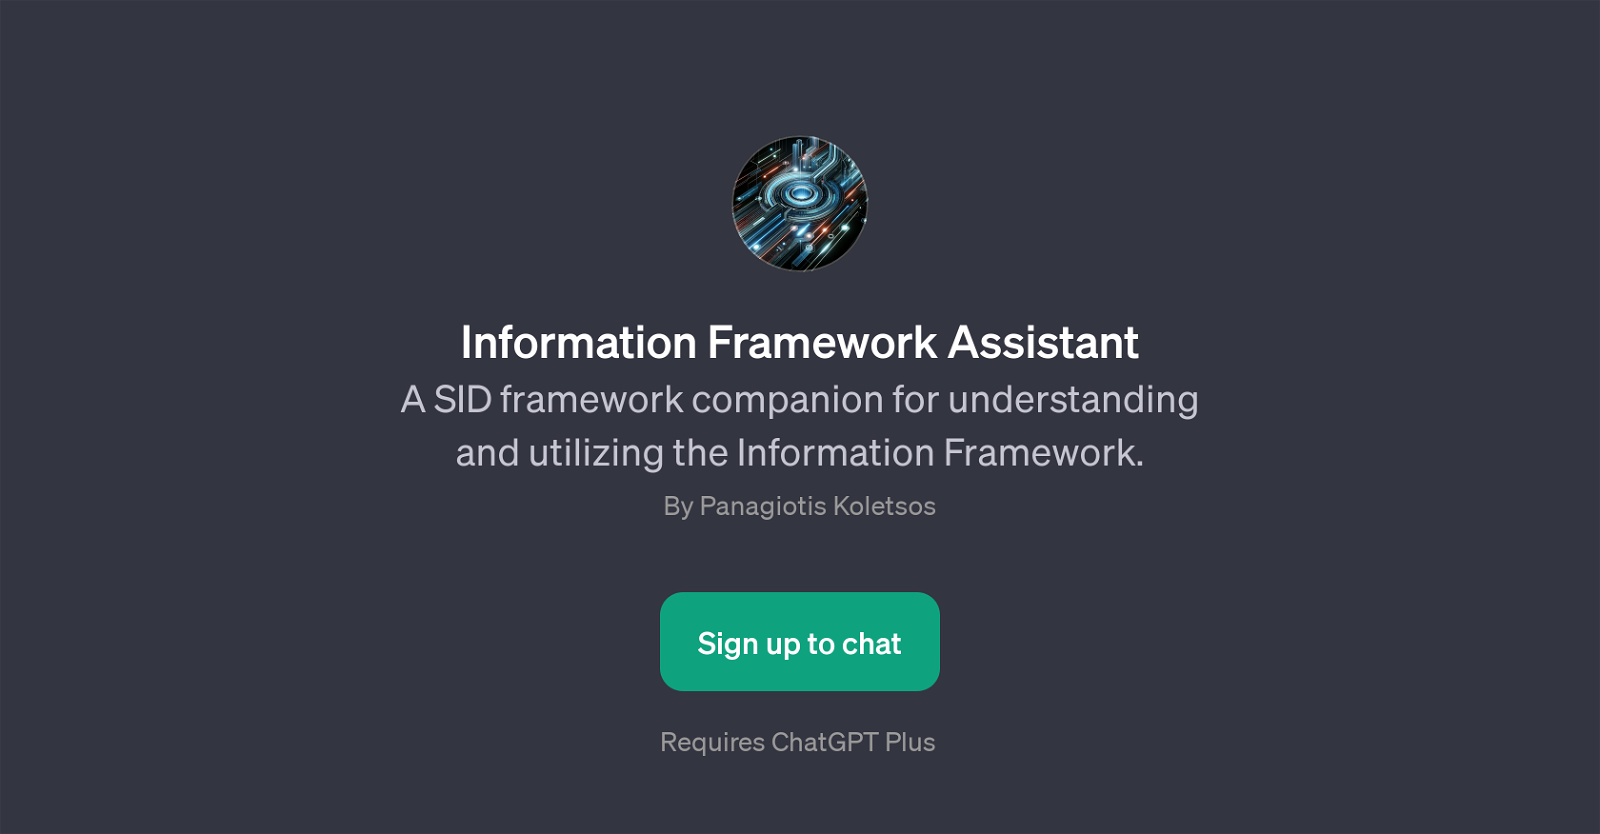 Information Framework Assistant website